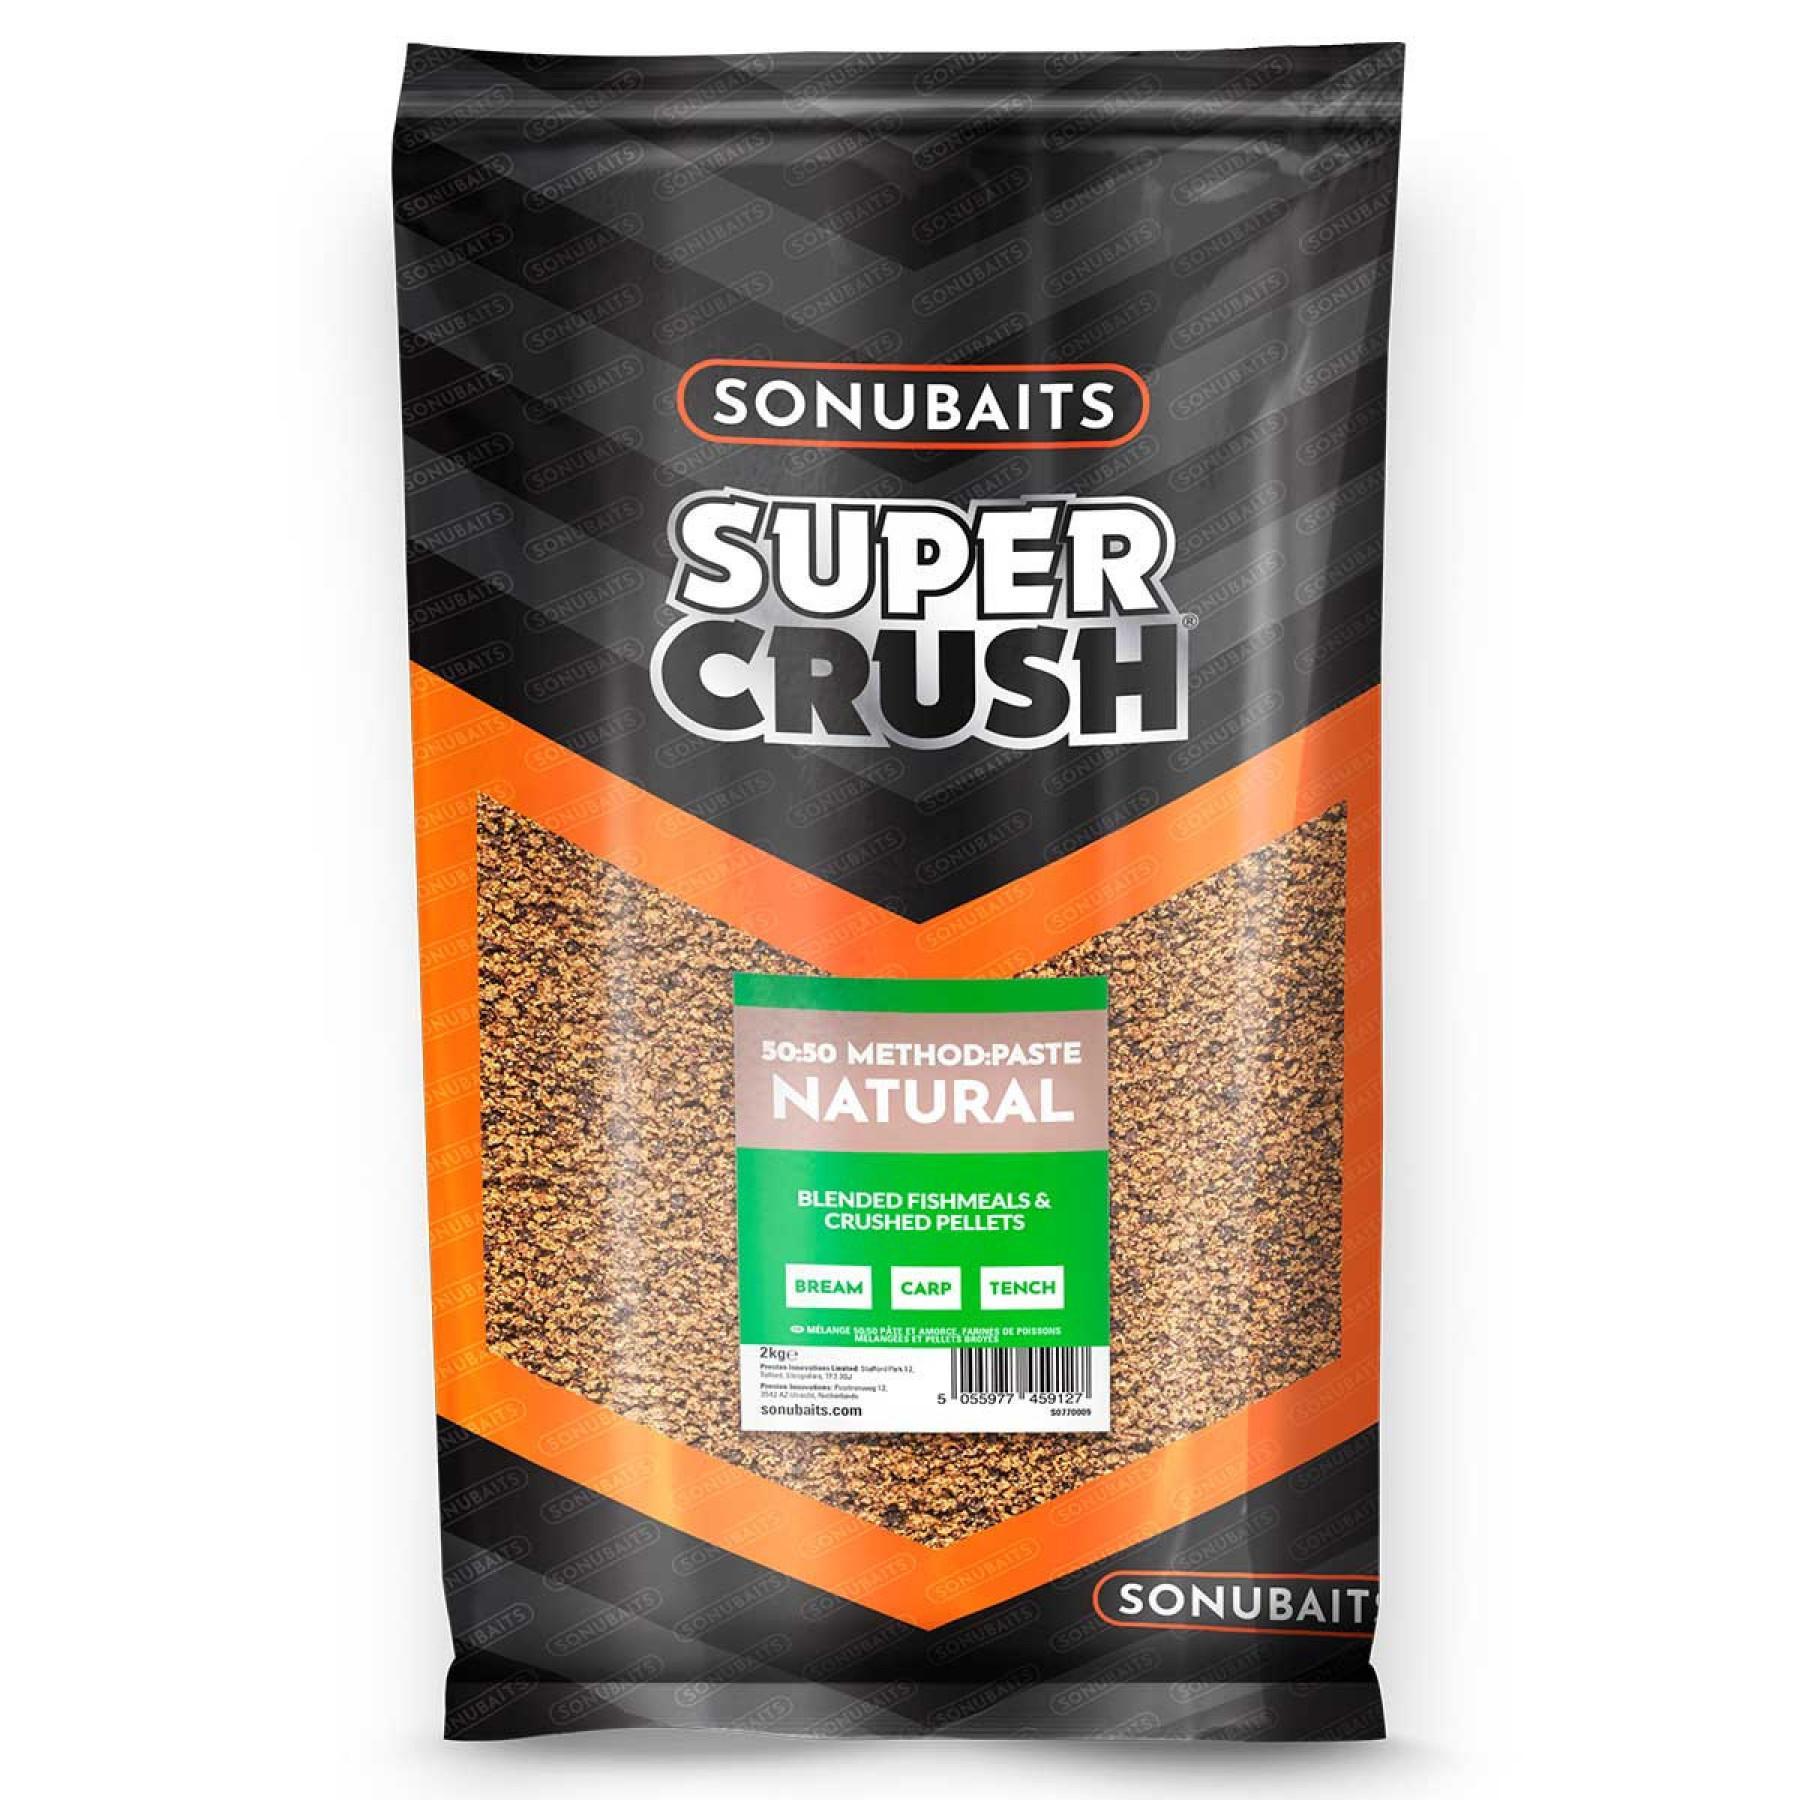 Mieszanka składników odżywczych Sonubaits 50:50 Method and Paste Natural 2kg